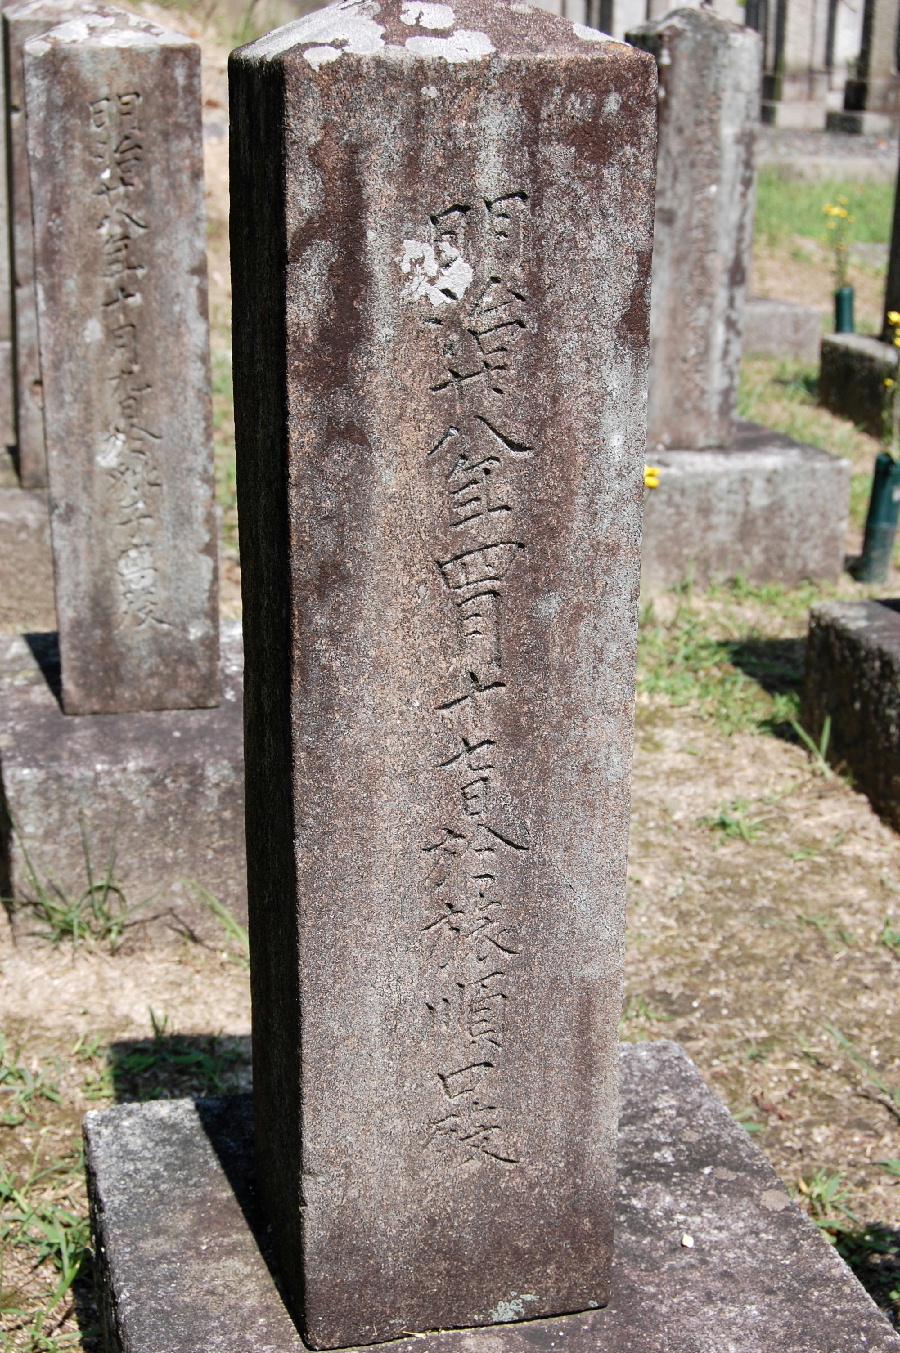 柳樹屯上陸前に（１８９５年４月１７日）旅順口で亡くなった兵士の墓碑